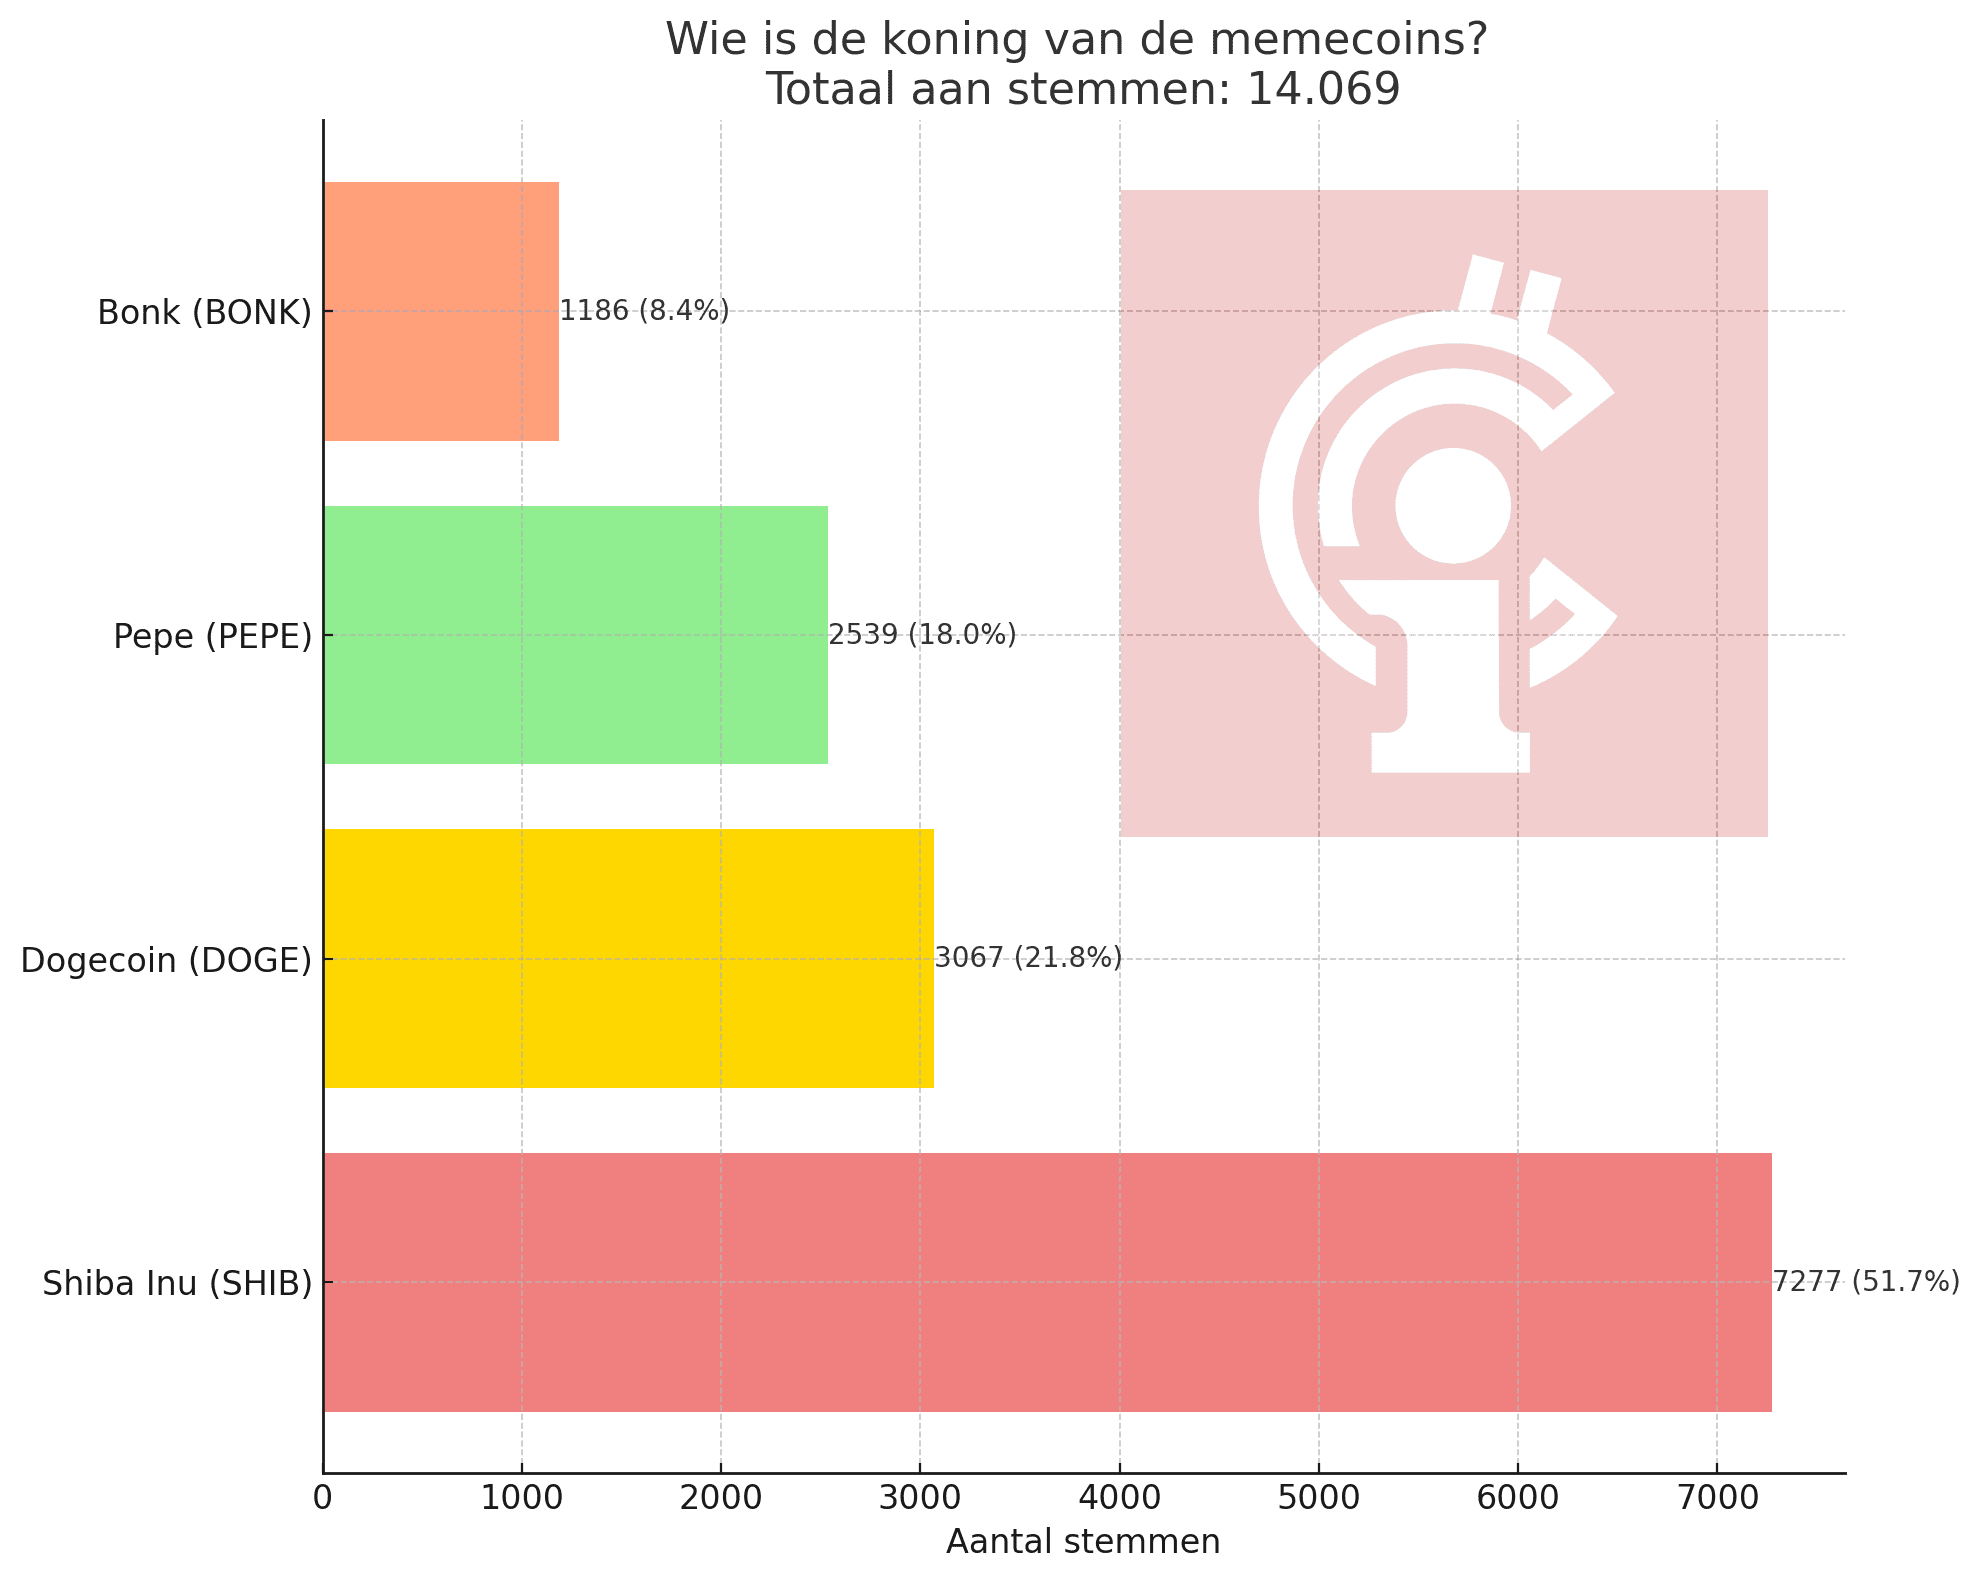 Poll resultaten op de vraag "Welke crypto is de memekoning?" Shiba inu kreeg meer dan 50% van de stemmen.